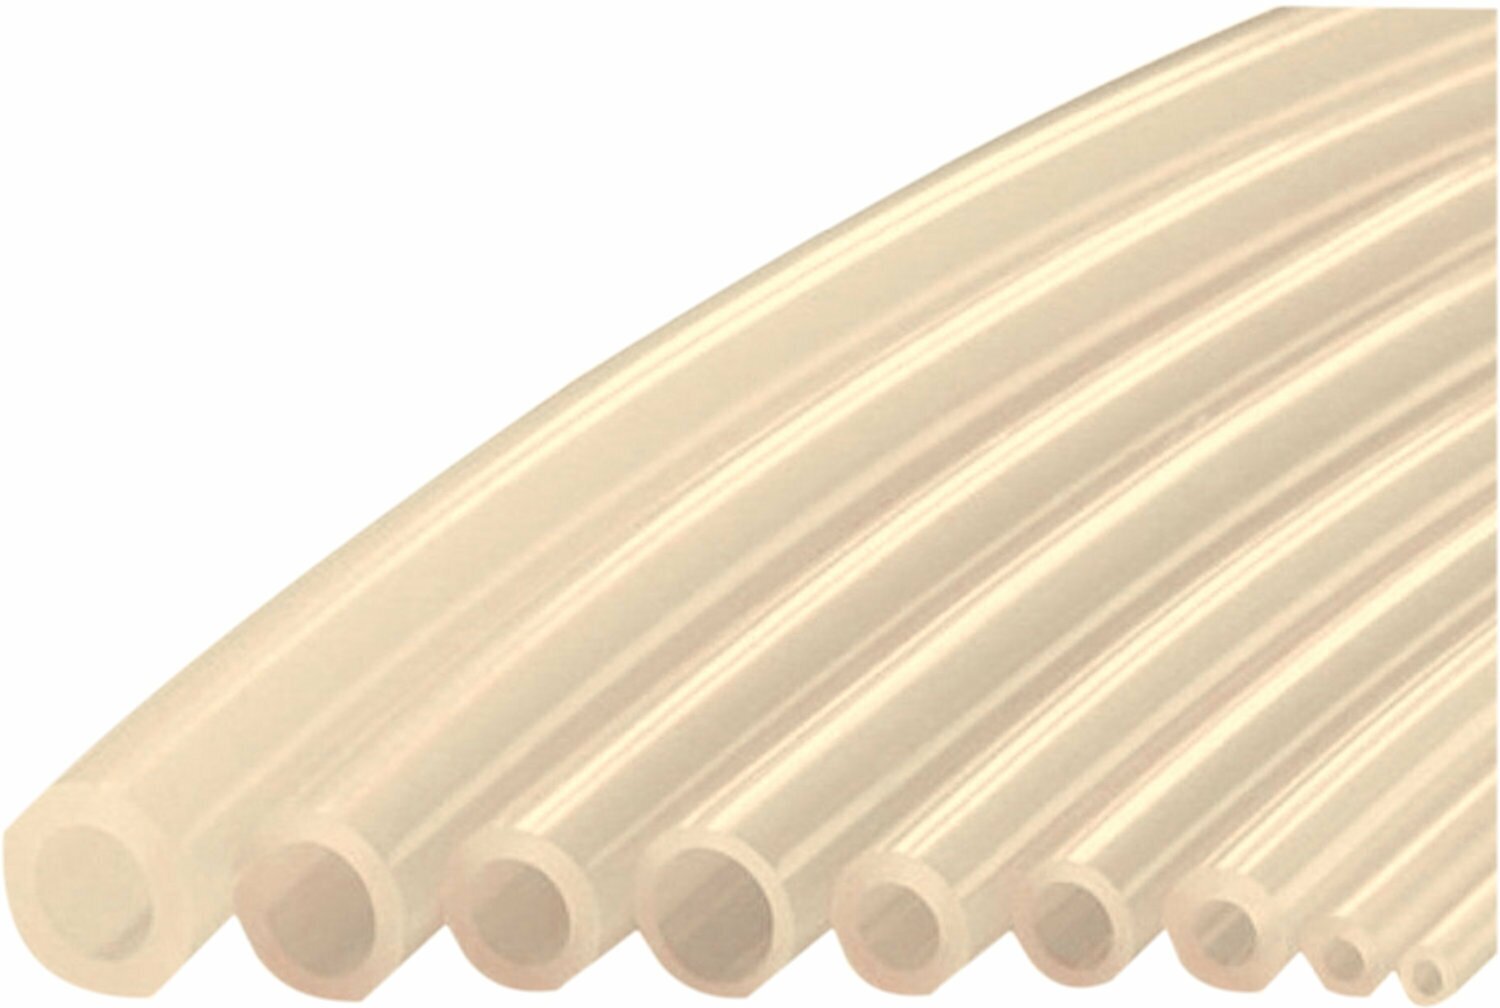 Трубка силиконовая 10,0*1,0 (10 мм внутренний диаметр, 1 мм стенка), длина 1м 40см